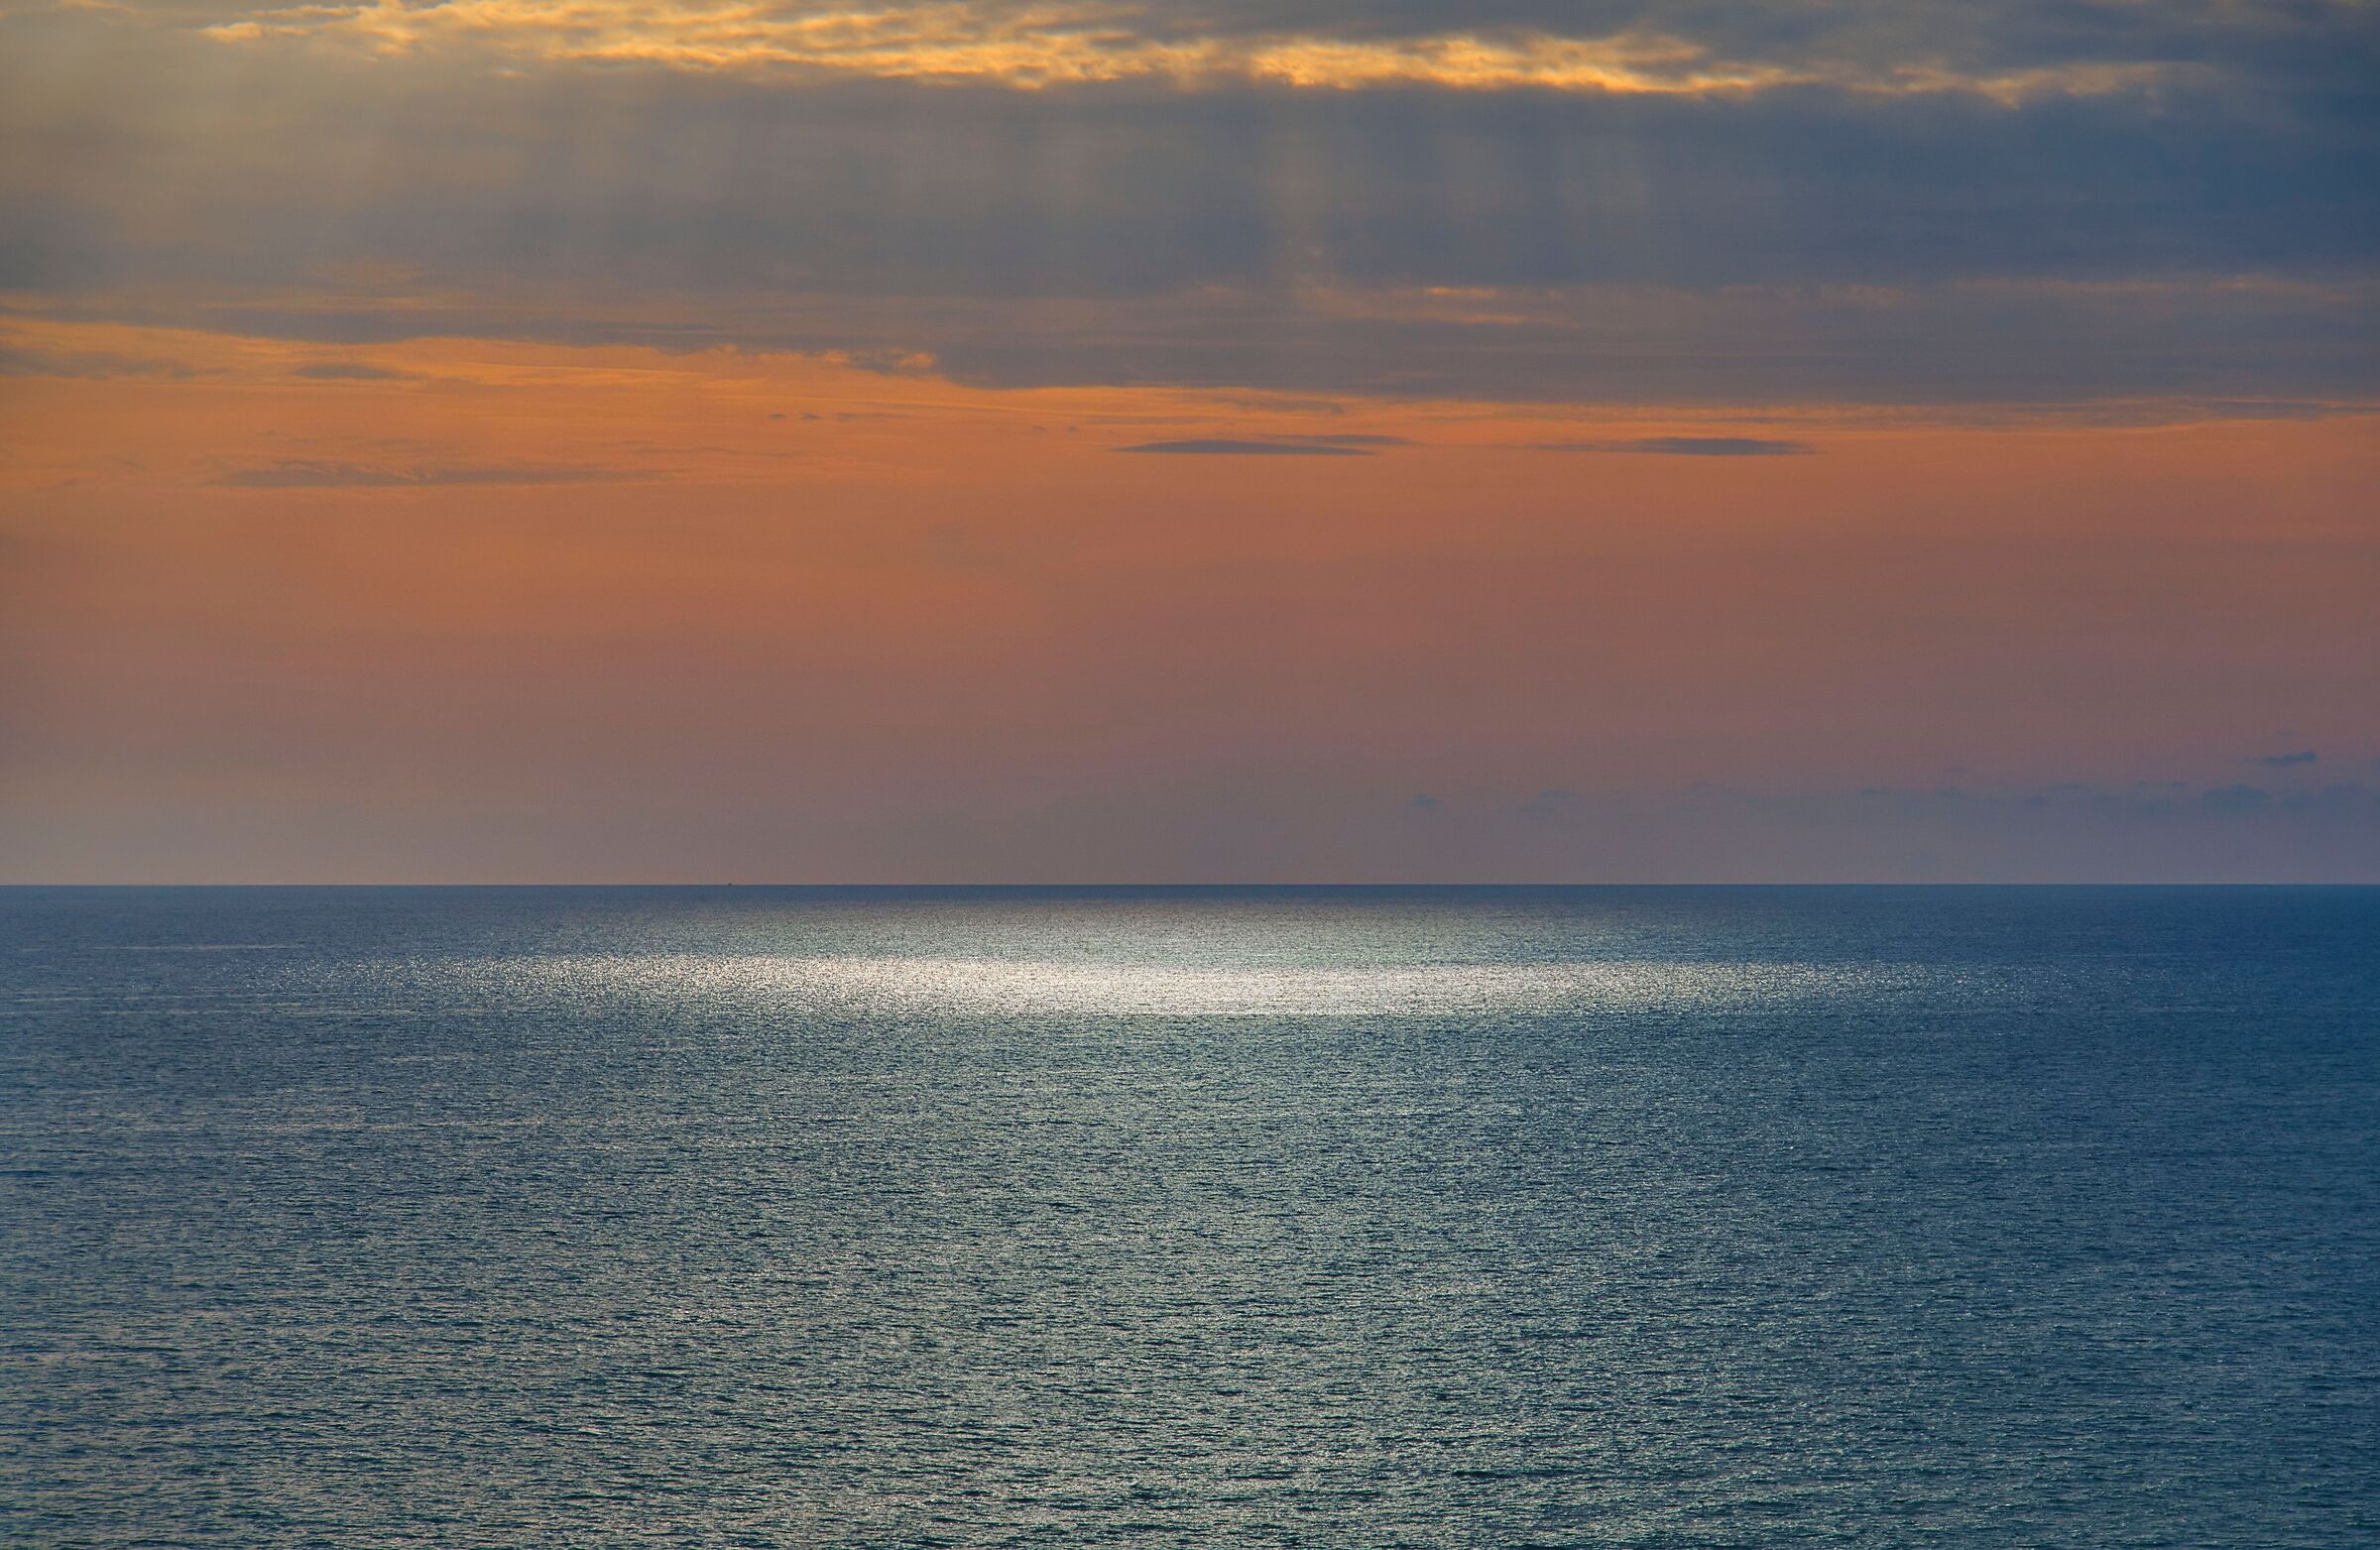 Light on the sea...